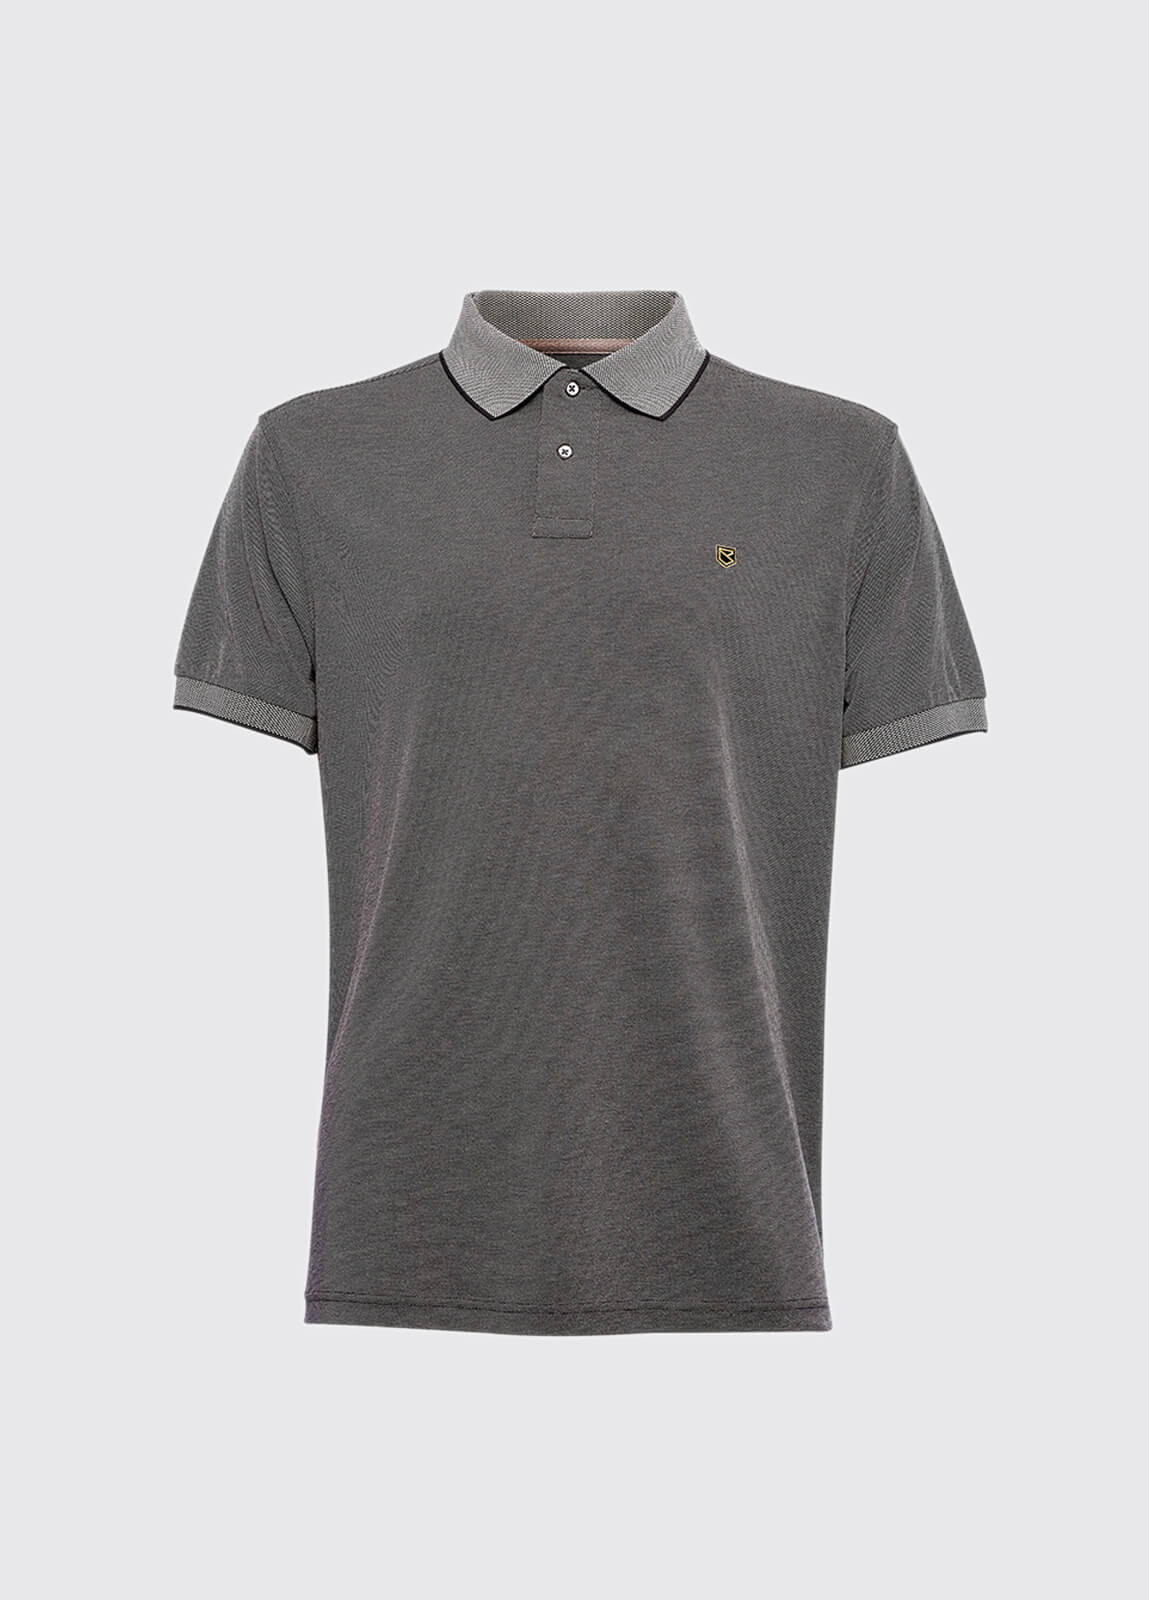 Kylemore polo shirt - Graphite